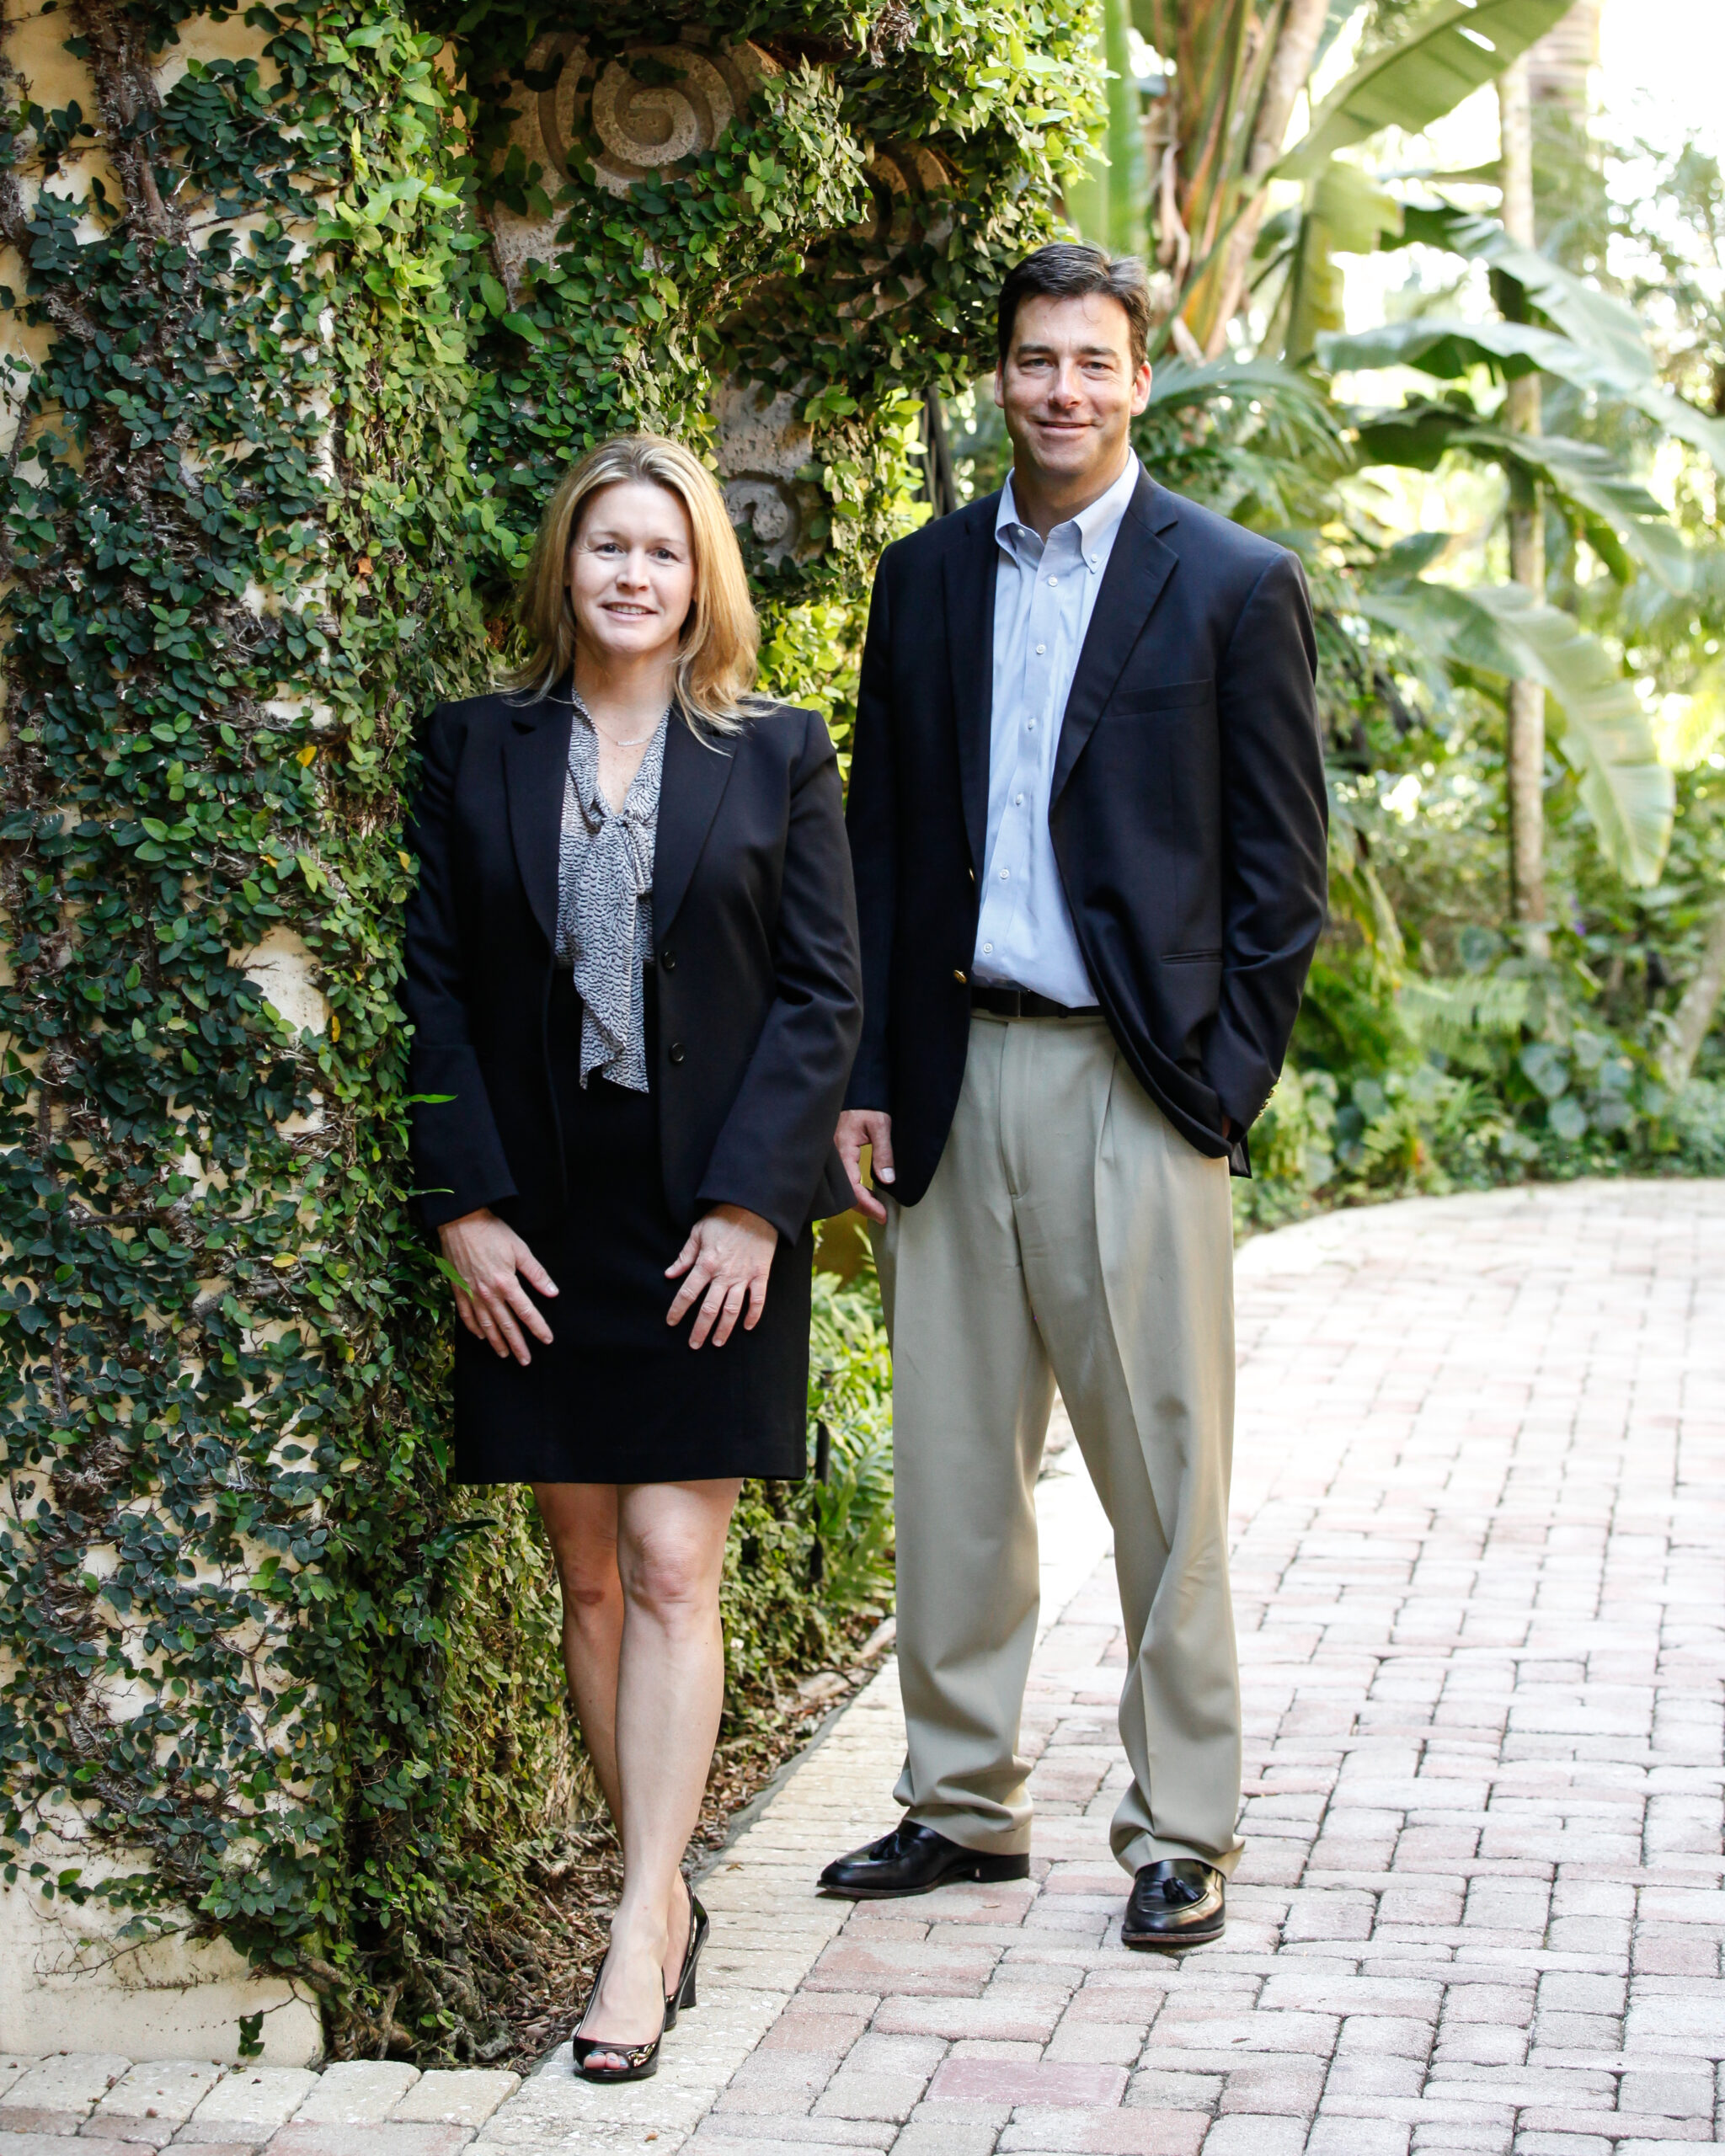 Ballentine Partners' Florida team